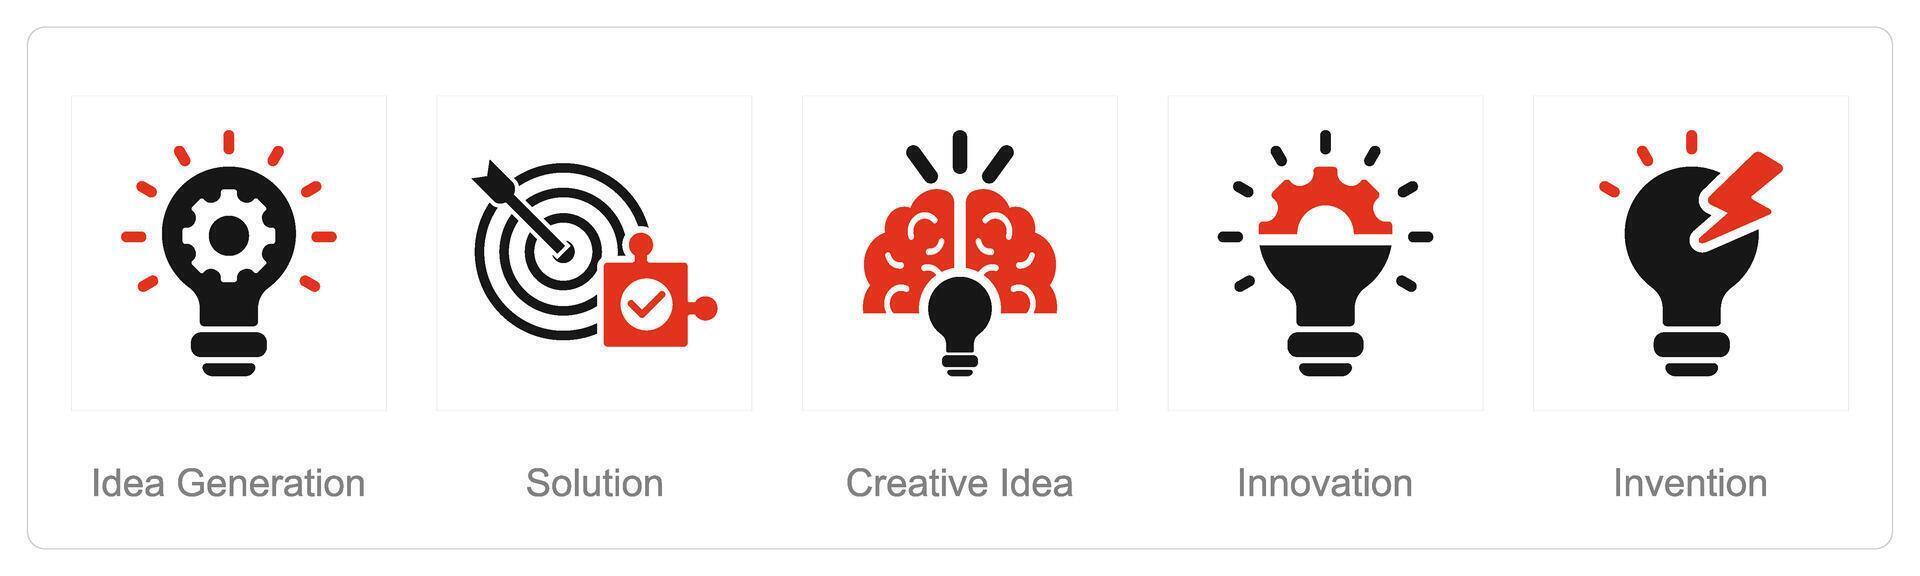 een reeks van 5 idee pictogrammen net zo idee generatie, oplossing, creatief idee vector